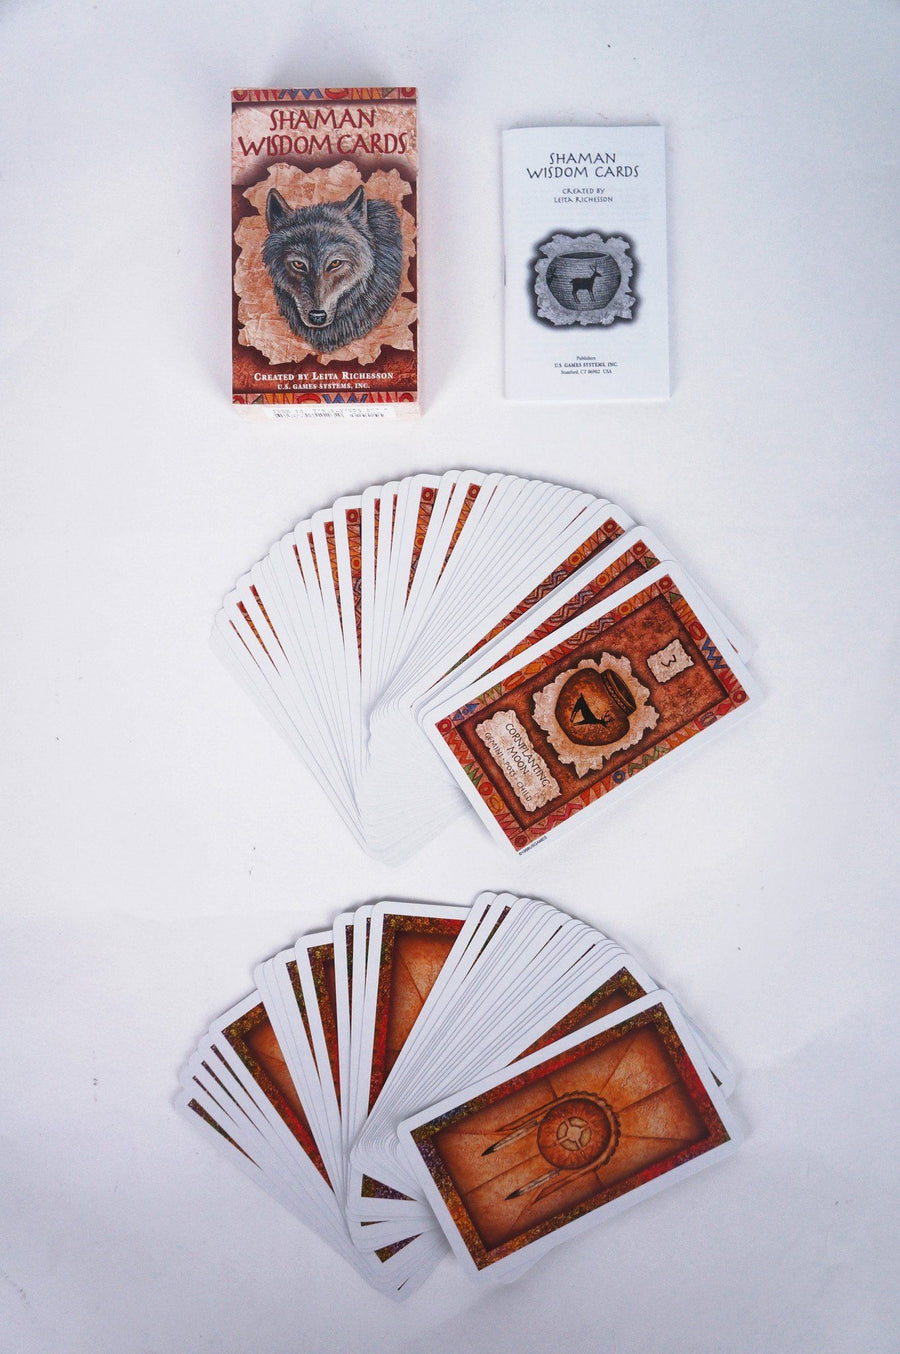 Shaman Wisdom Cards - Tarot Card Deck Tarot Cards Non-HOI 